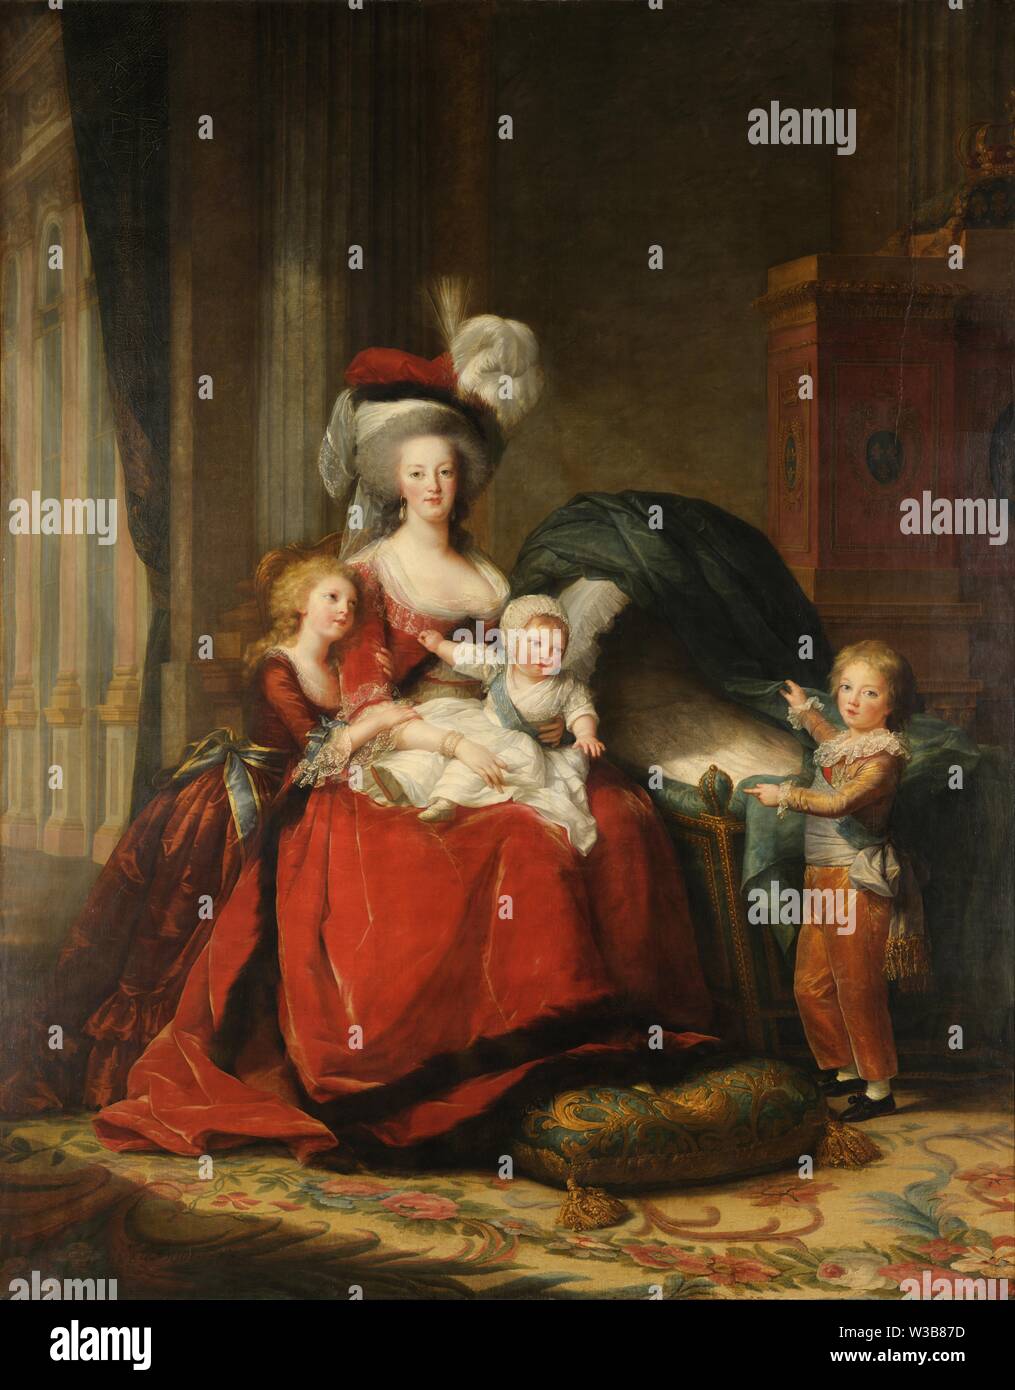 Marie Antoinette und ihre Kinder (1787) Gemälde von Louise Élisabeth Vigée Le Brun - Sehr hohe Auflösung und Bildqualität Stockfoto